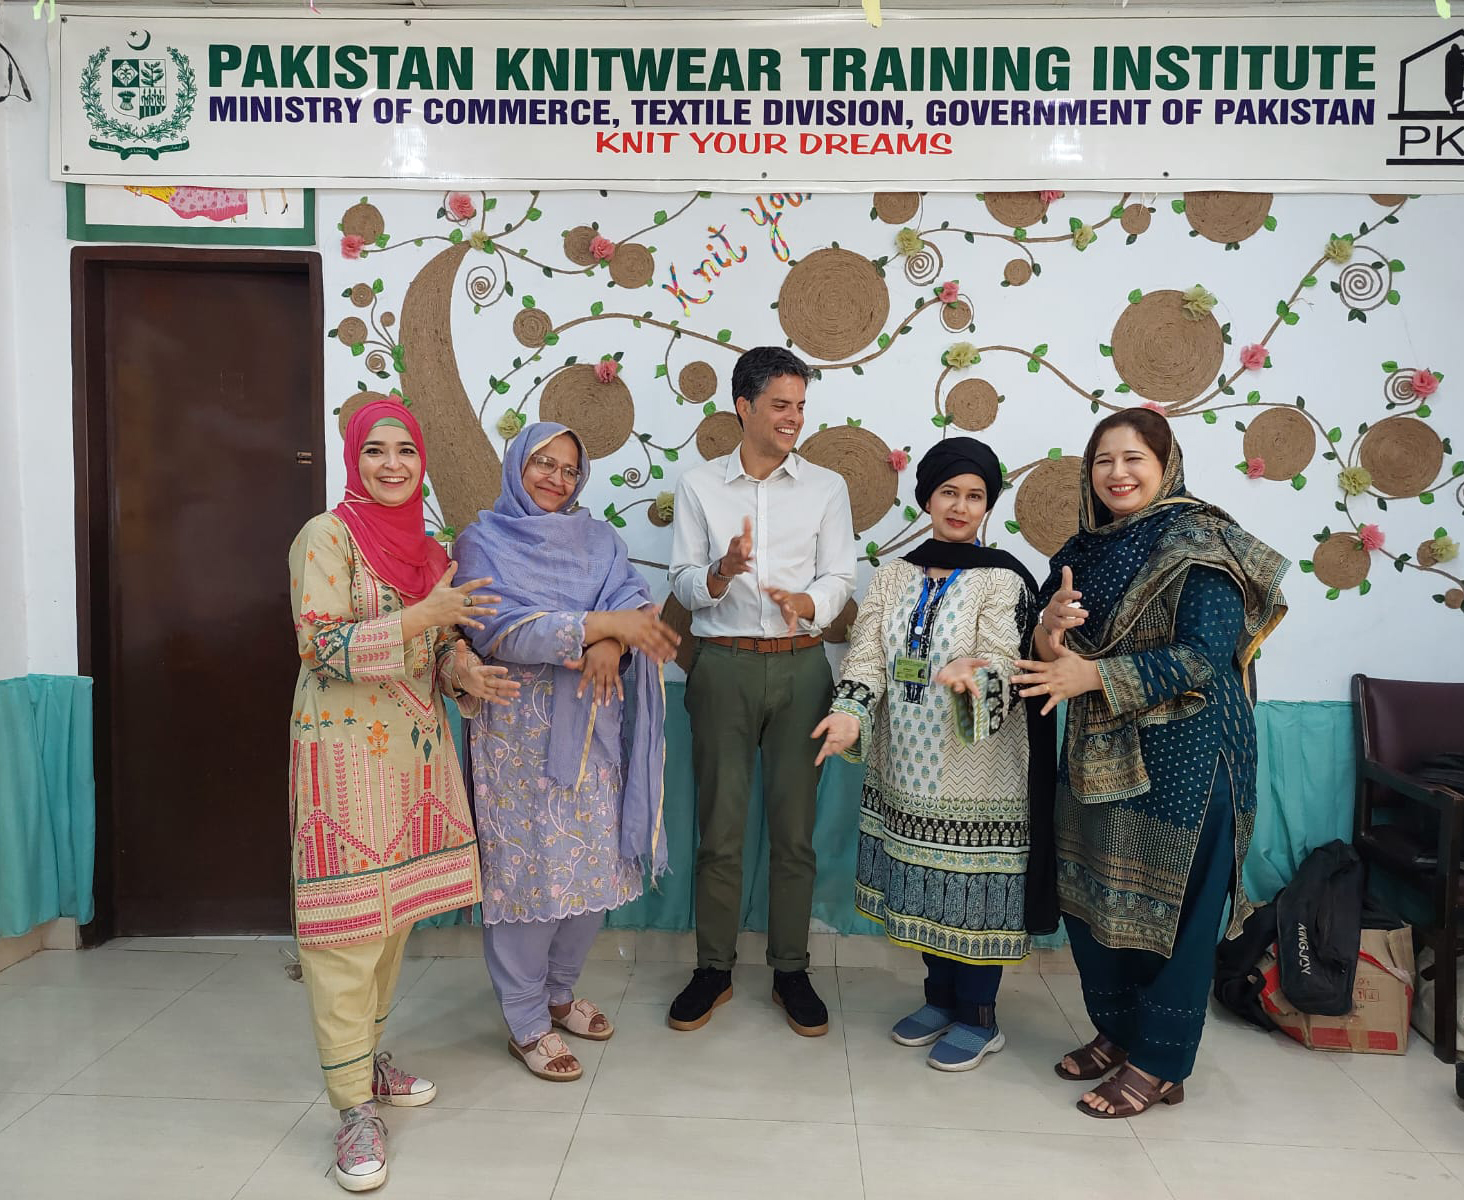 Pakistan Knitwear Training Institute